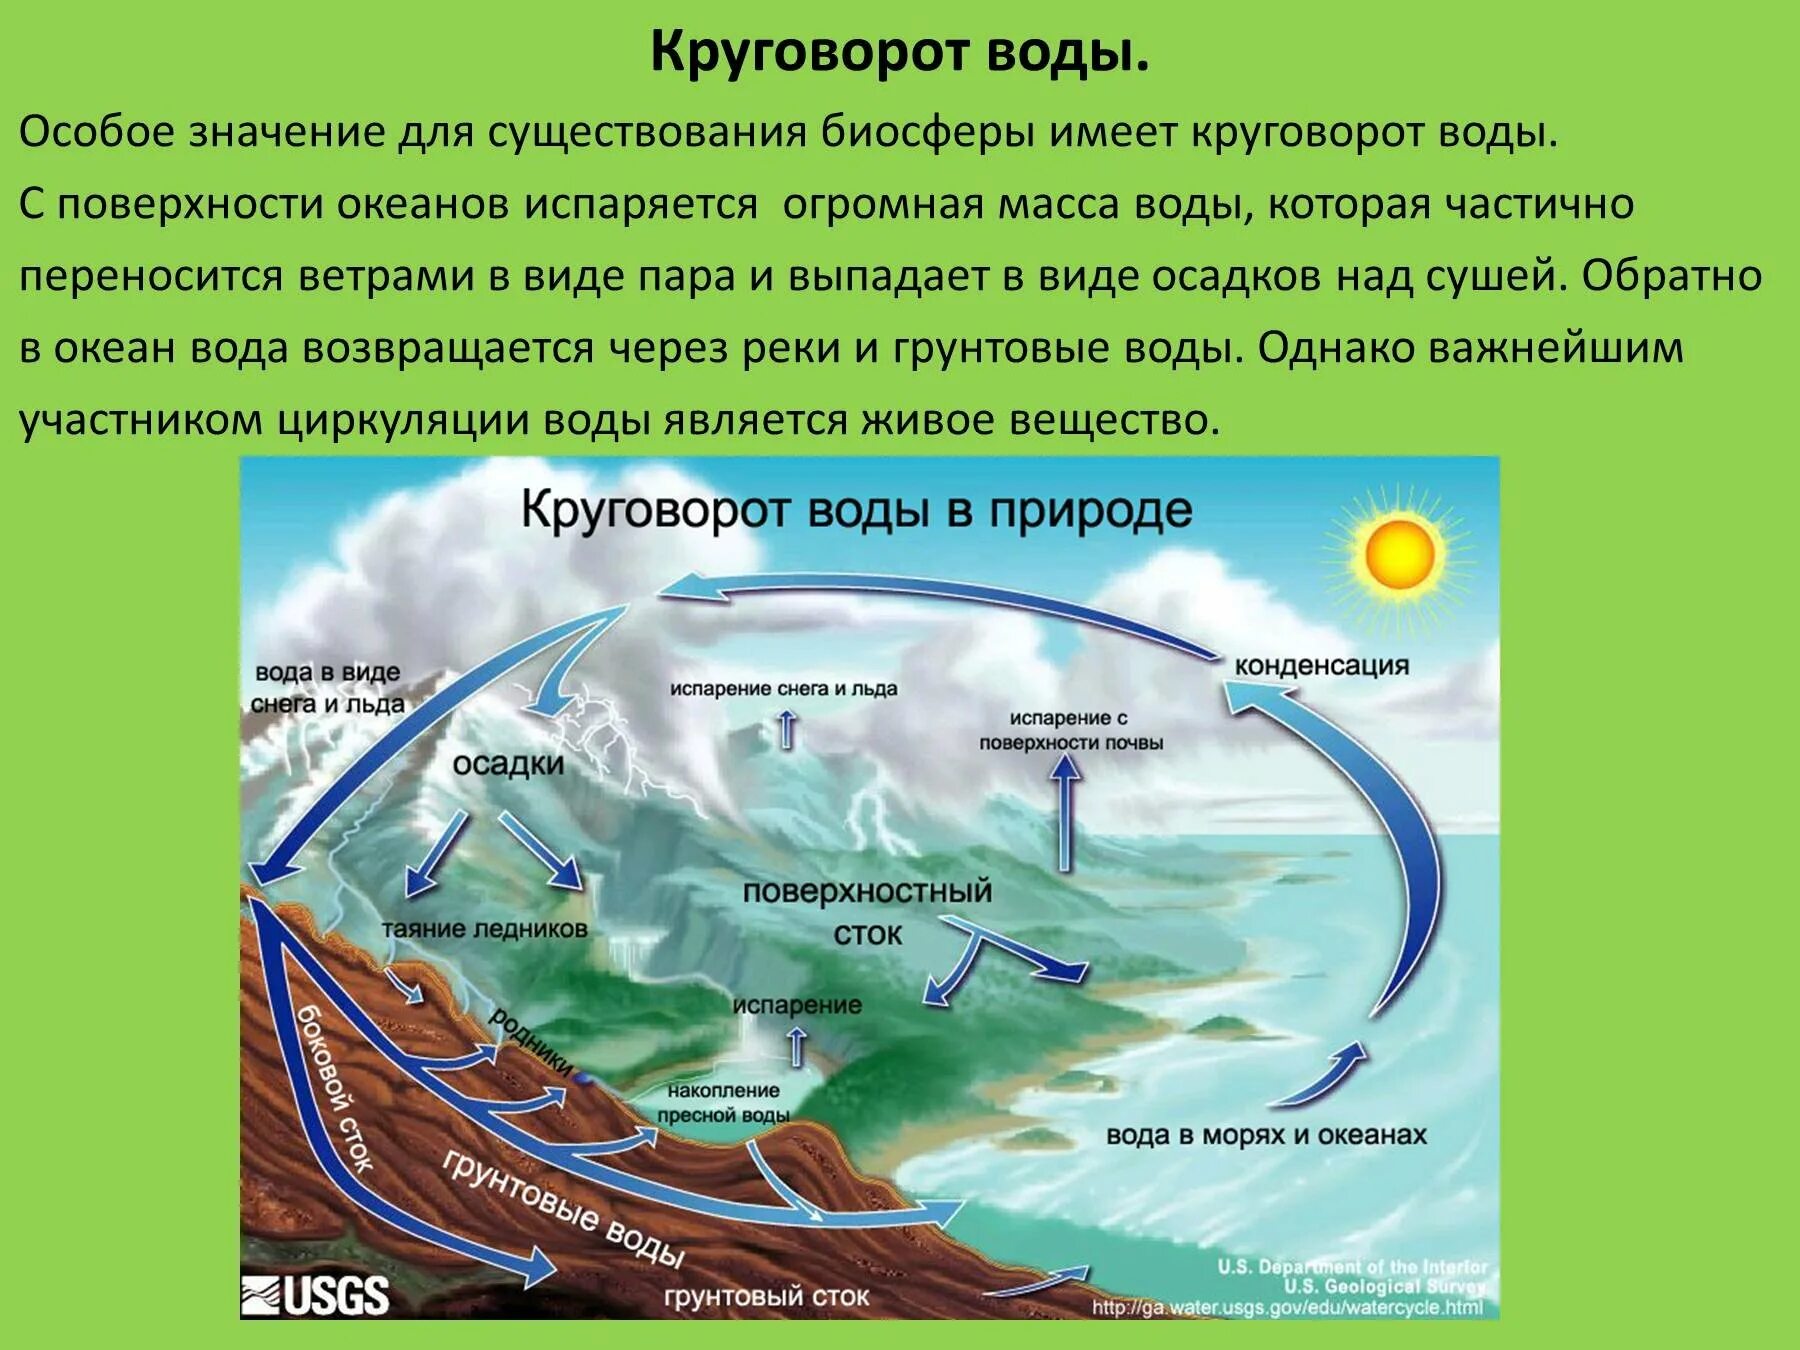 Мировой круговорот в природе 6 класс. Биосфера круговорот воды в биосфере. Гидрологический цикл круговорота воды. Круговорот воды в биосфере 6 класс география. Каково значение круговорот в природе